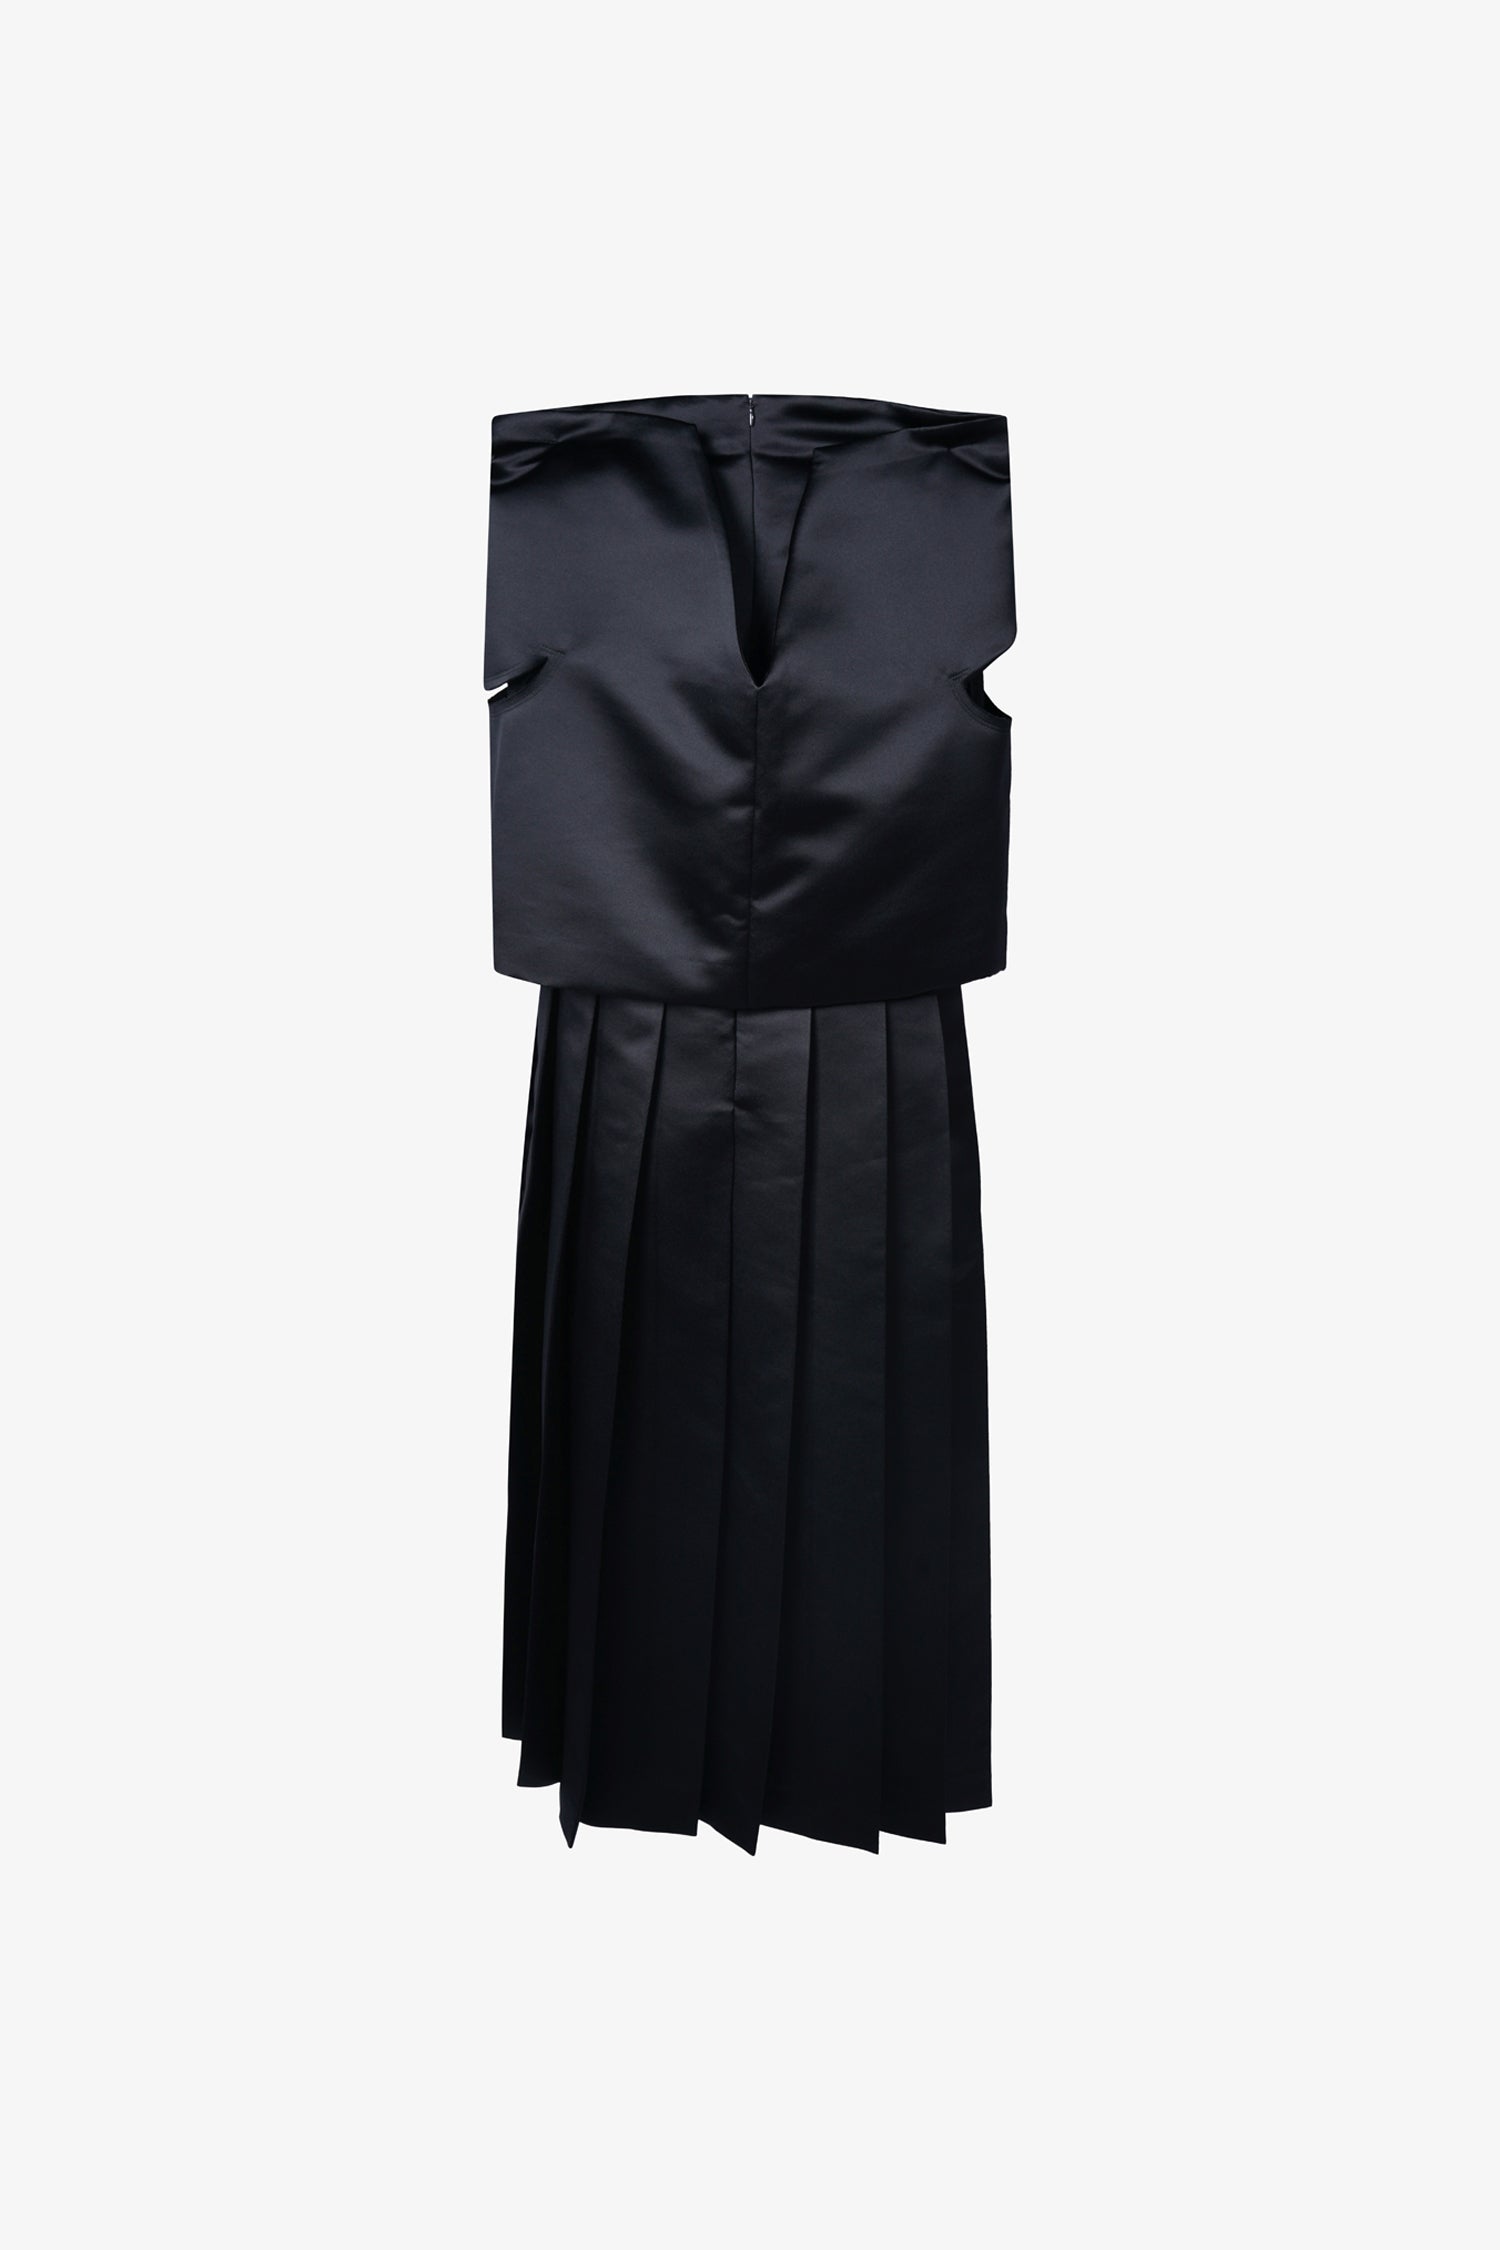 Selectshop FRAME - COMME DES GARÇONS Geometrical Structured Dress Dresses Dubai